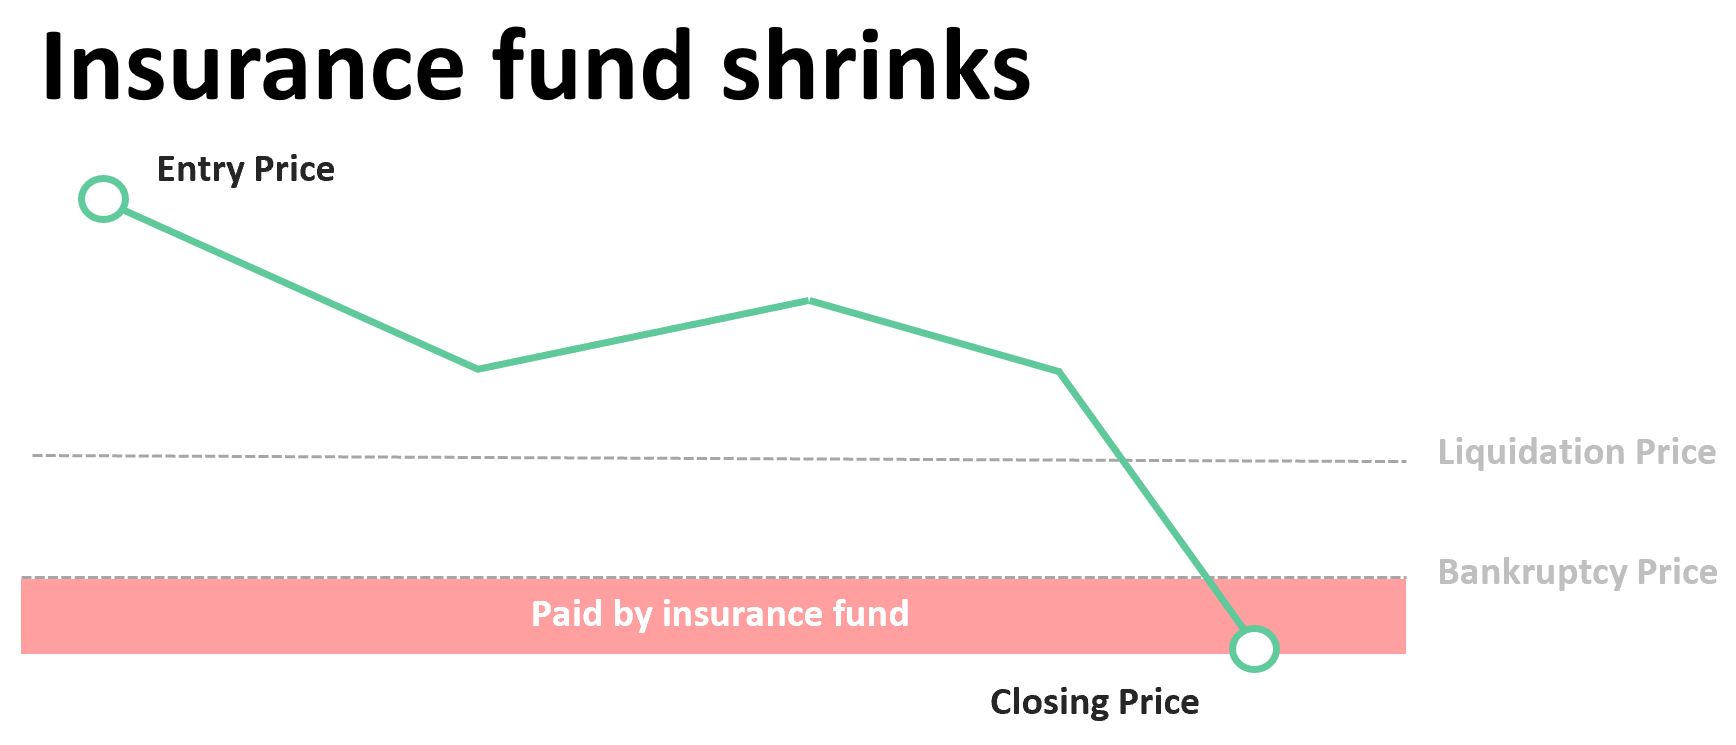 how insurance fund shrinks